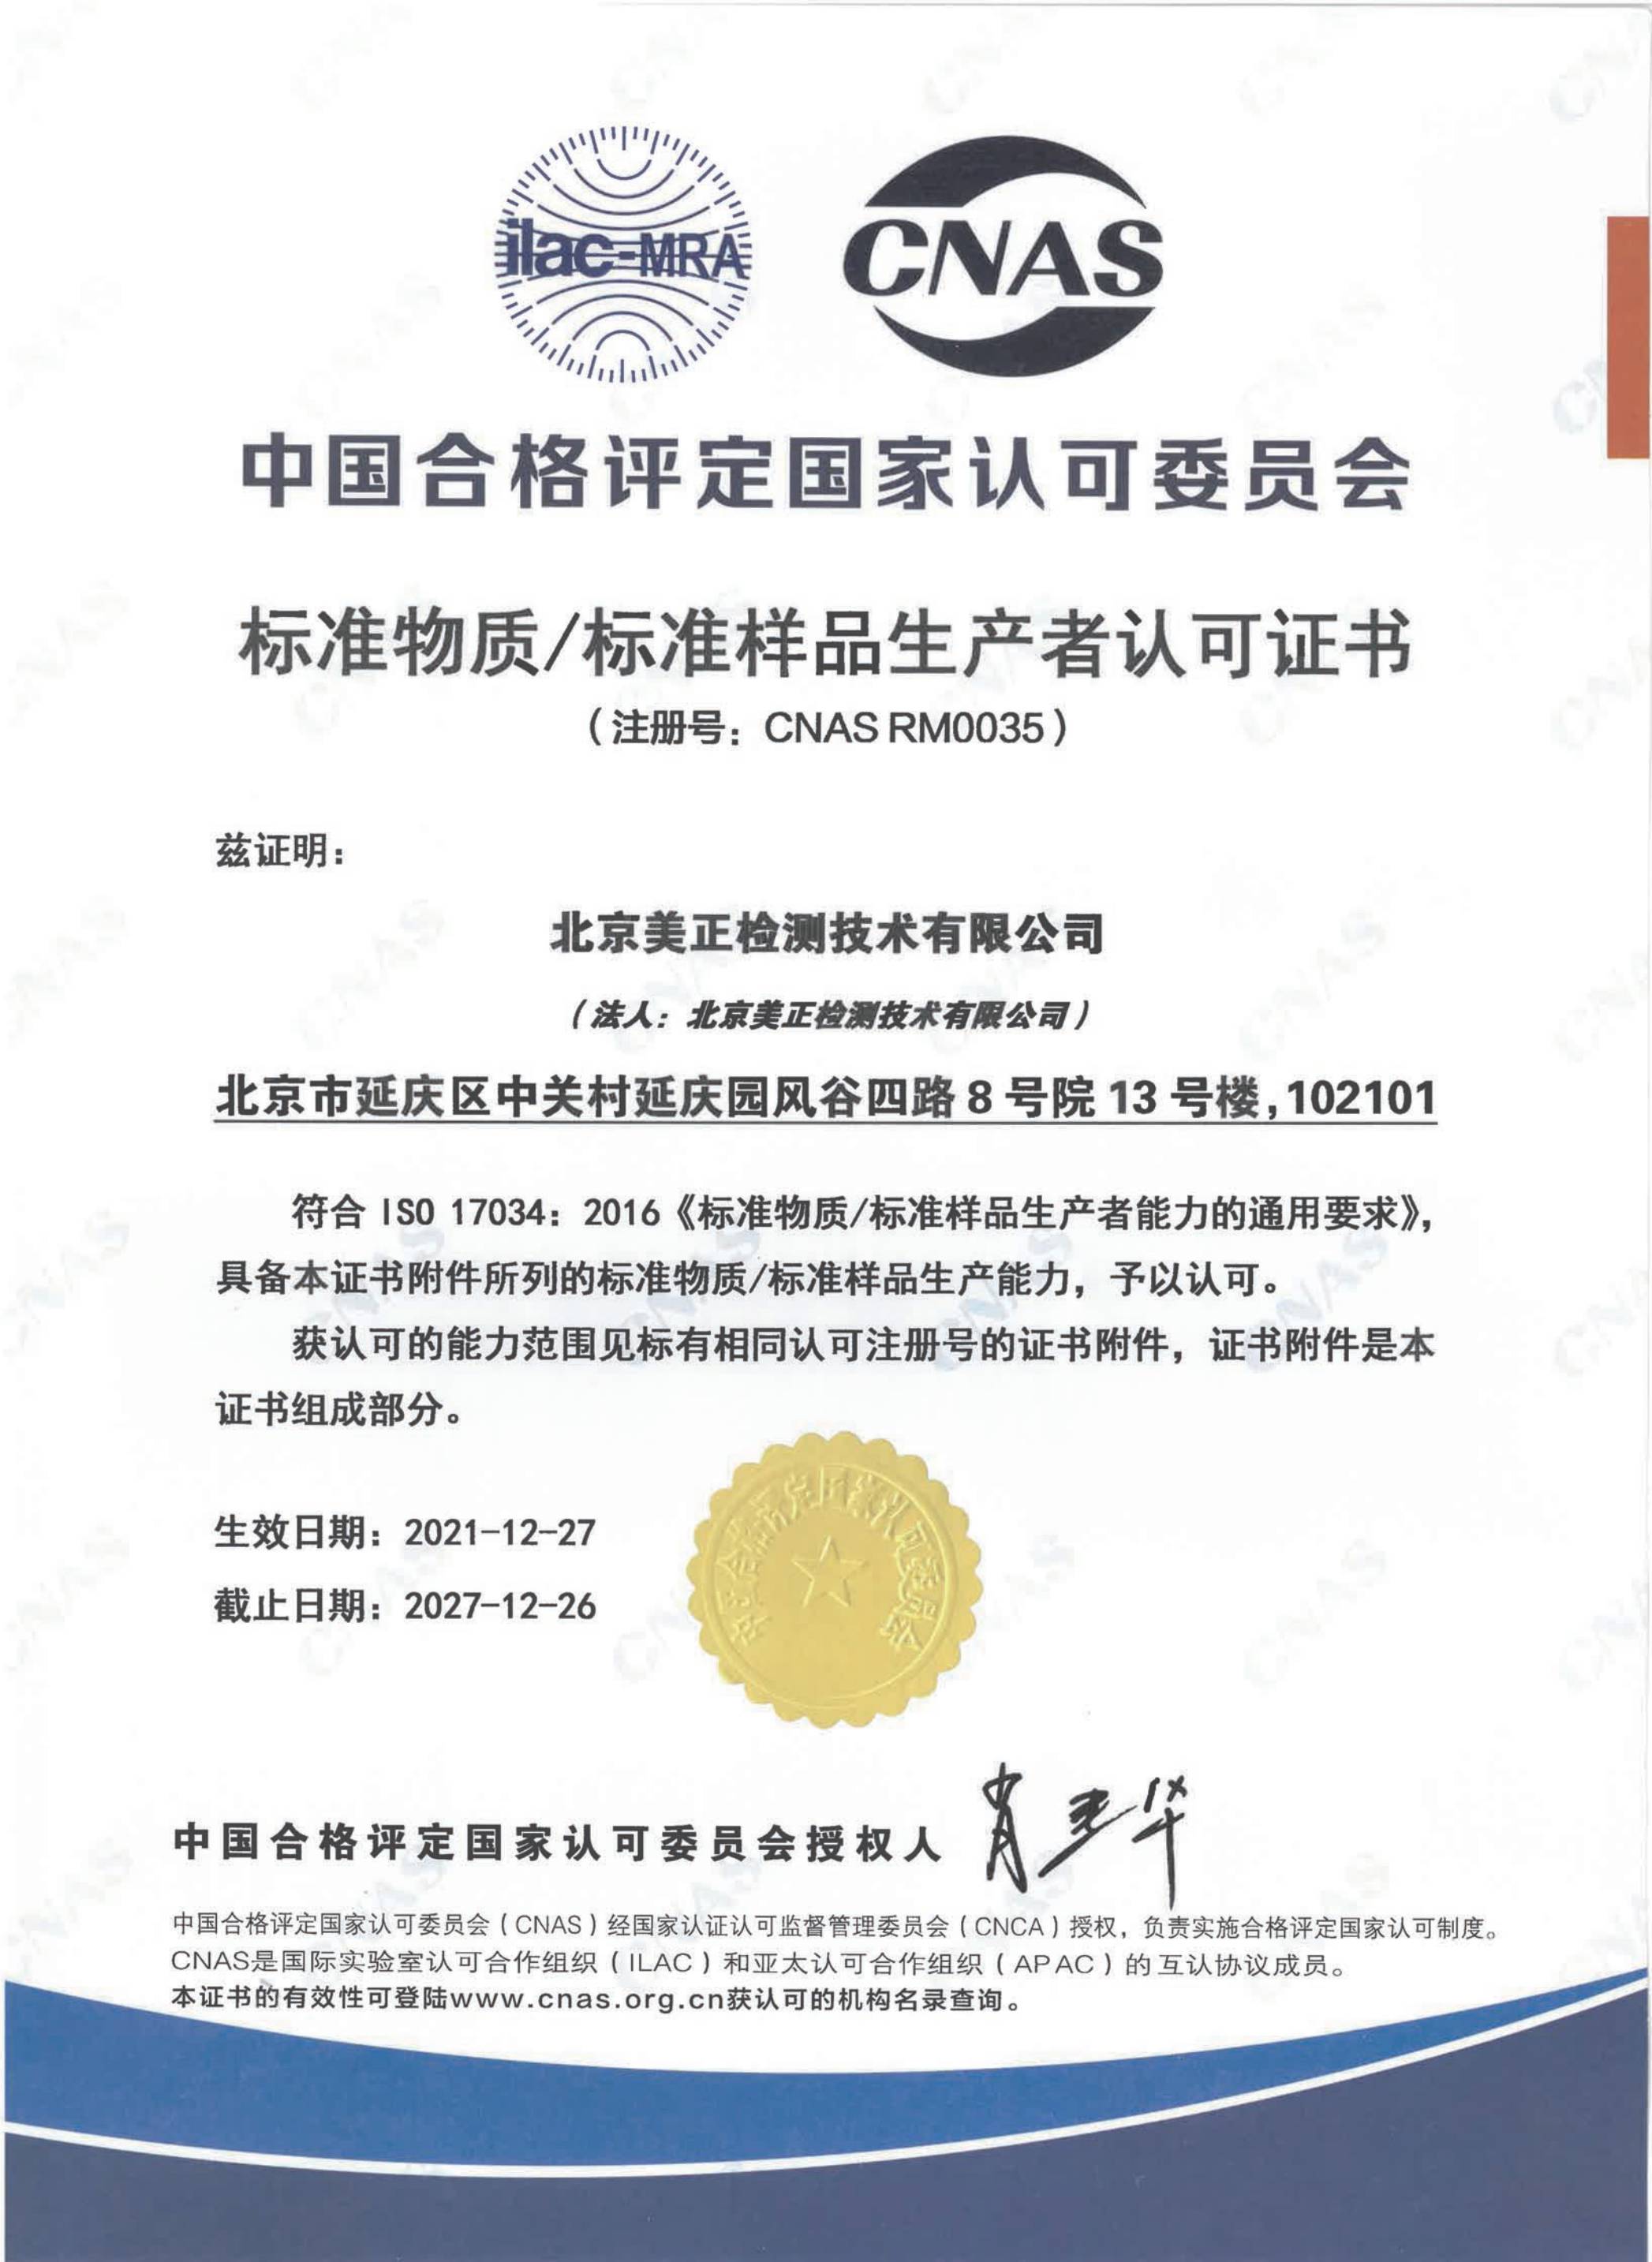 2022年1月北京美正检测技术有限公司获“标准物质/标准样品生产者认可证书”